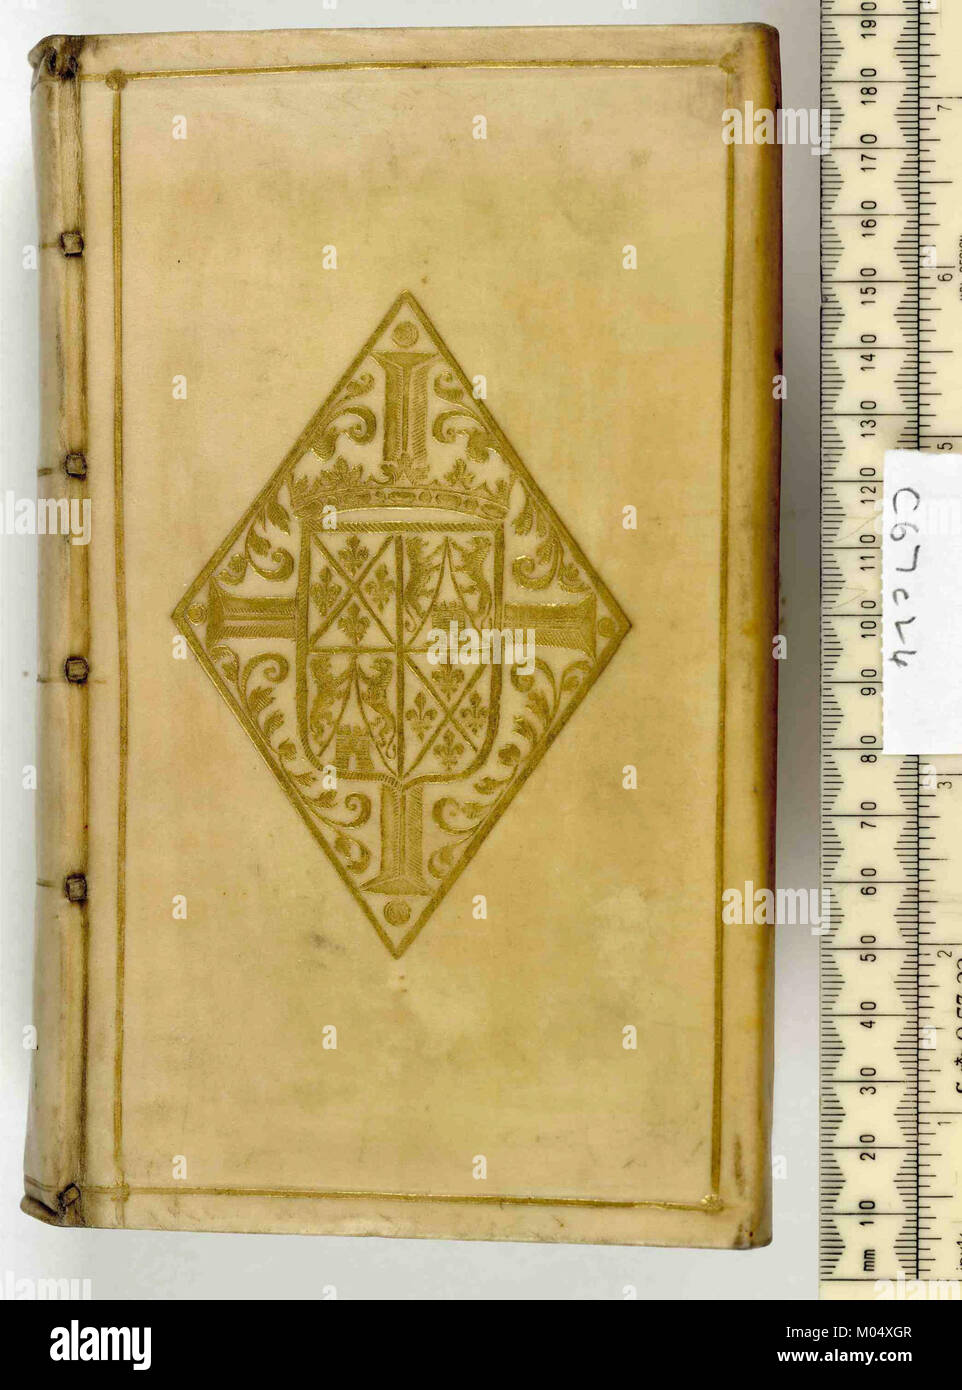 Camporum eloquentiae - Upper cover (c67c24) Stock Photo